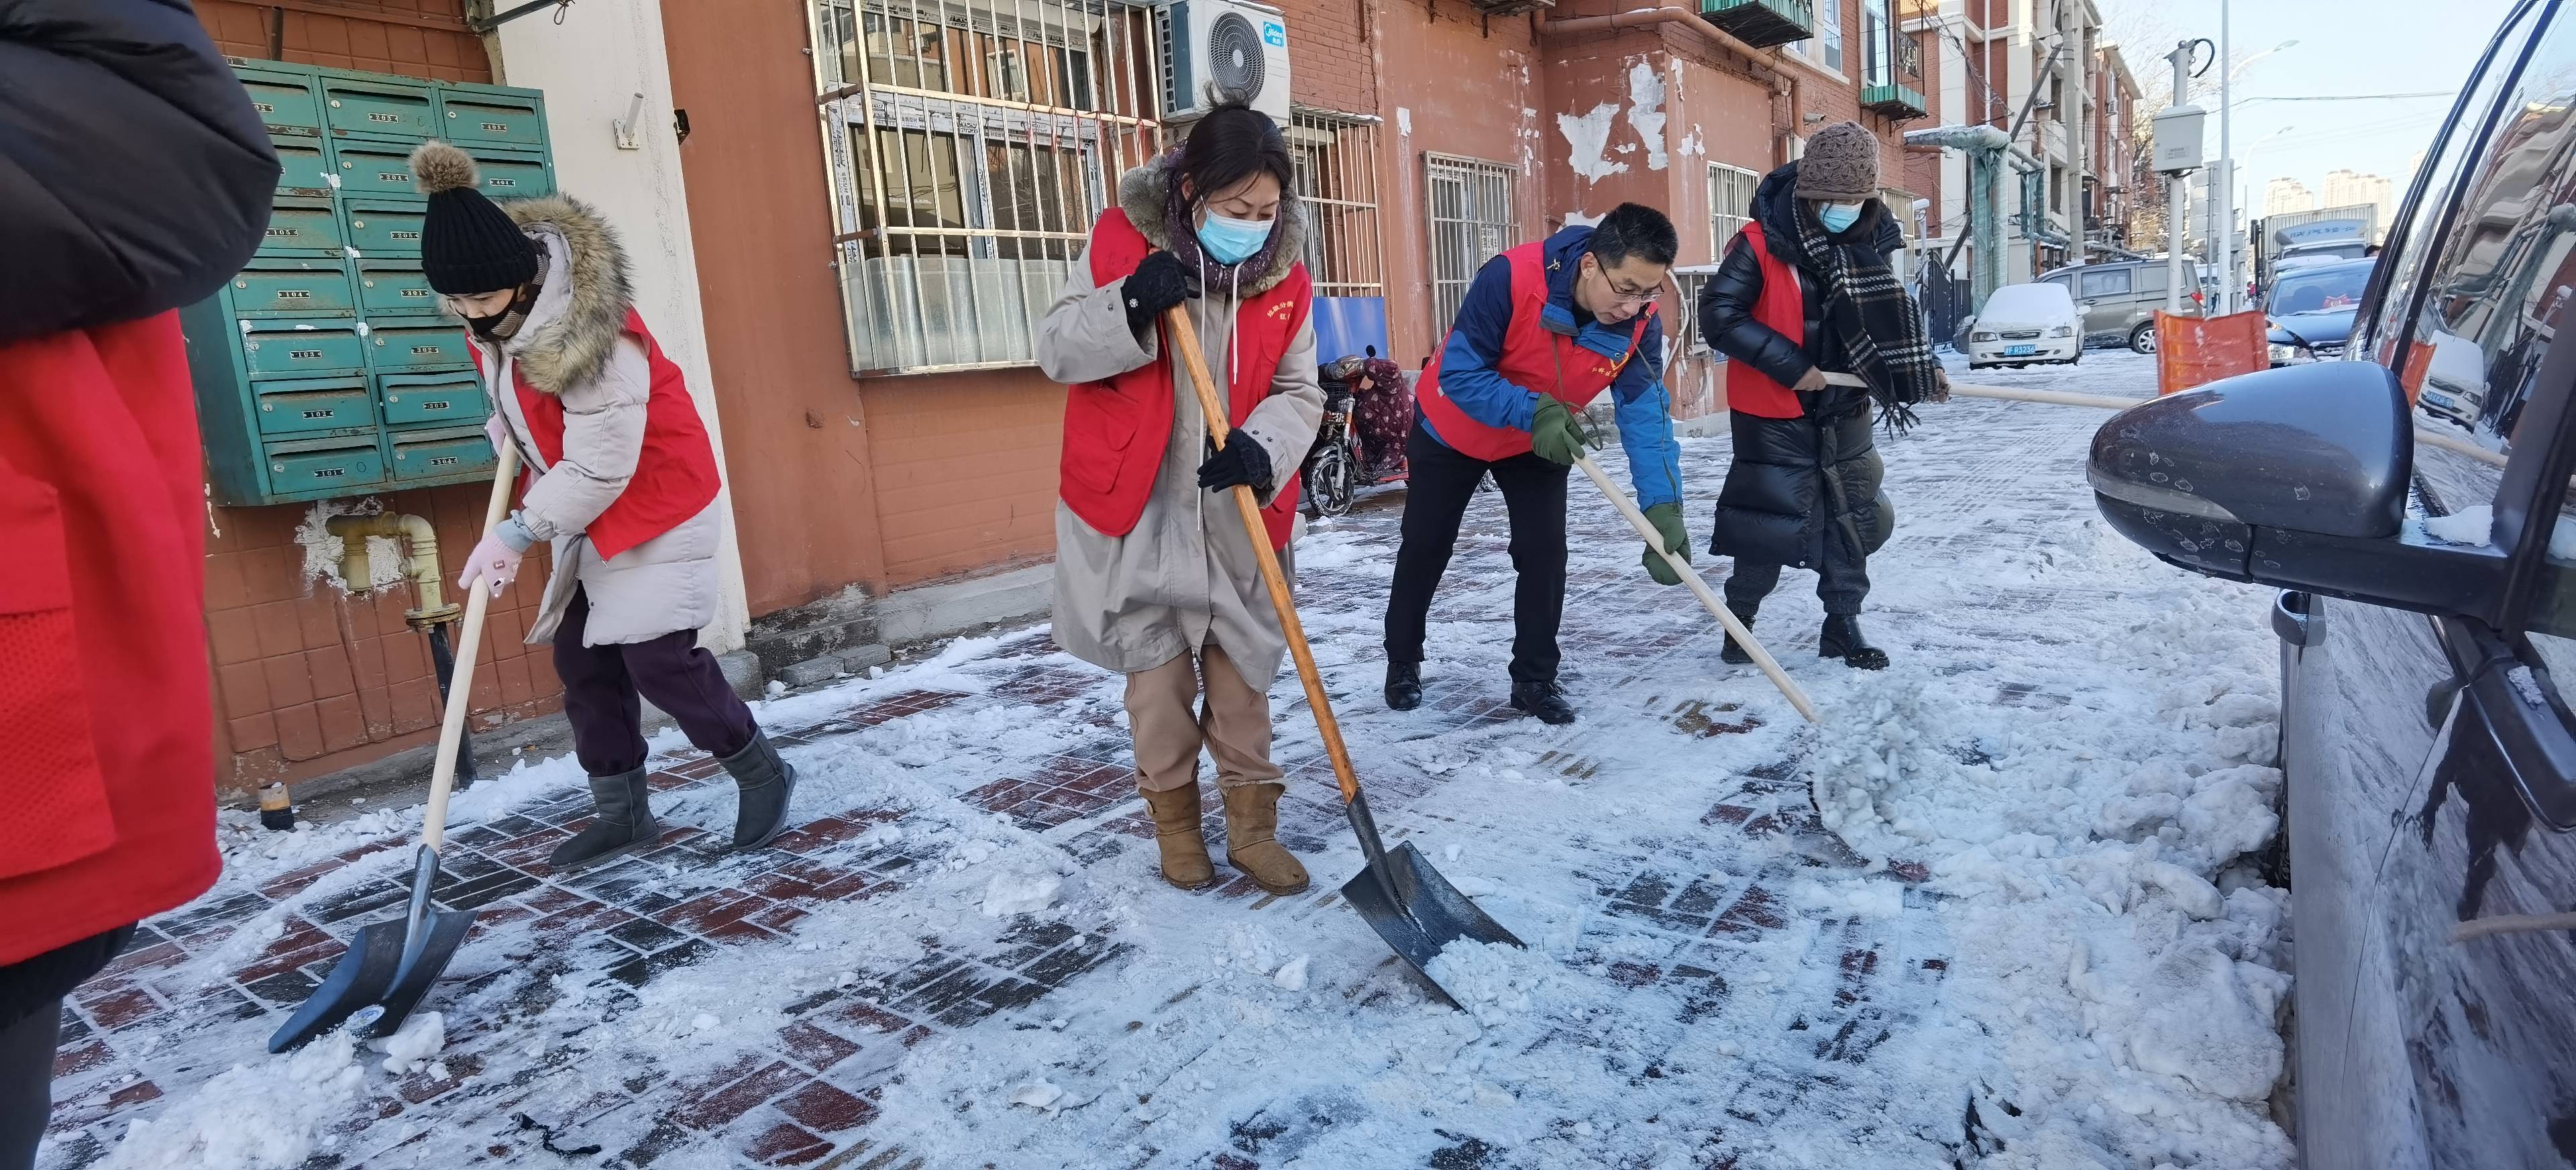 社区扫雪活动照片图片